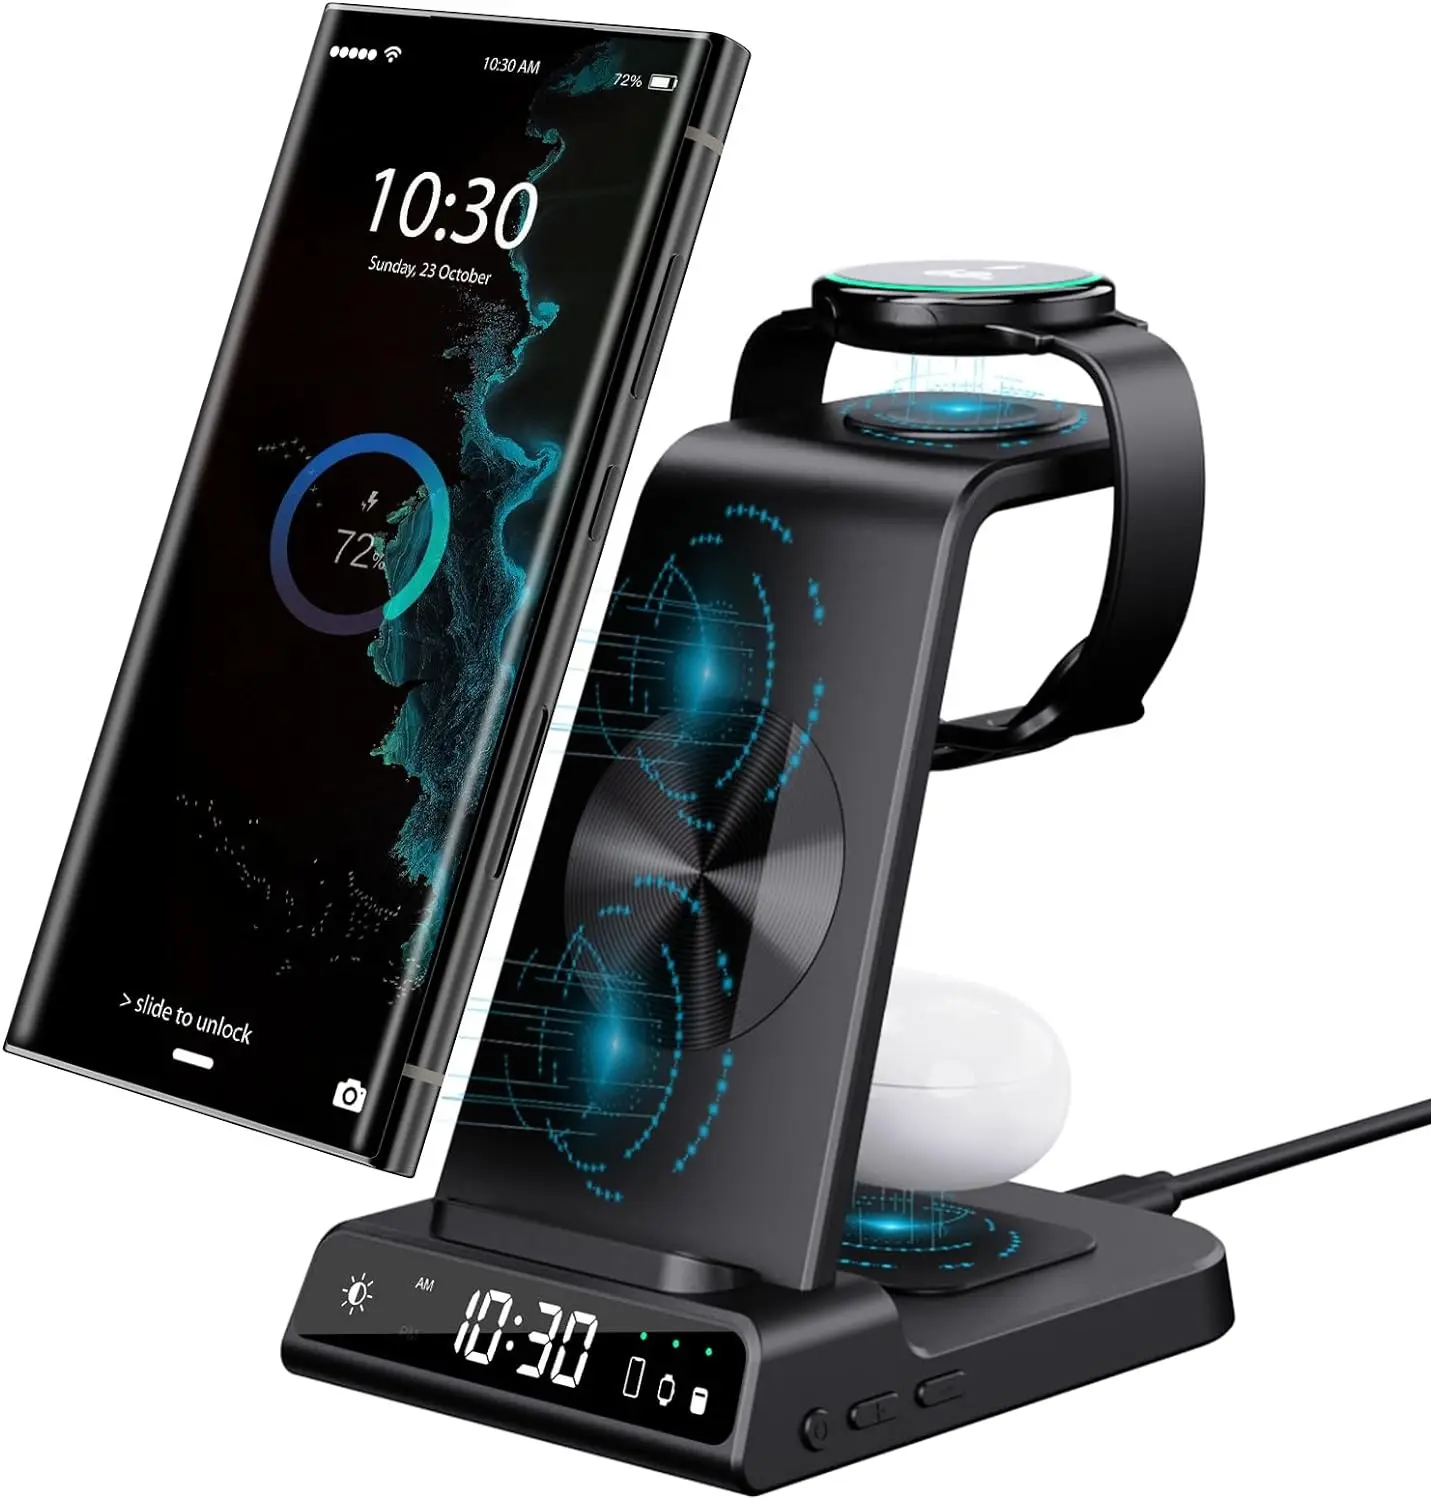 Carregador sem fio estação de carregamento 3 em 1 Android Dock Relógio alarme para telefone, relógio e fones de ouvido